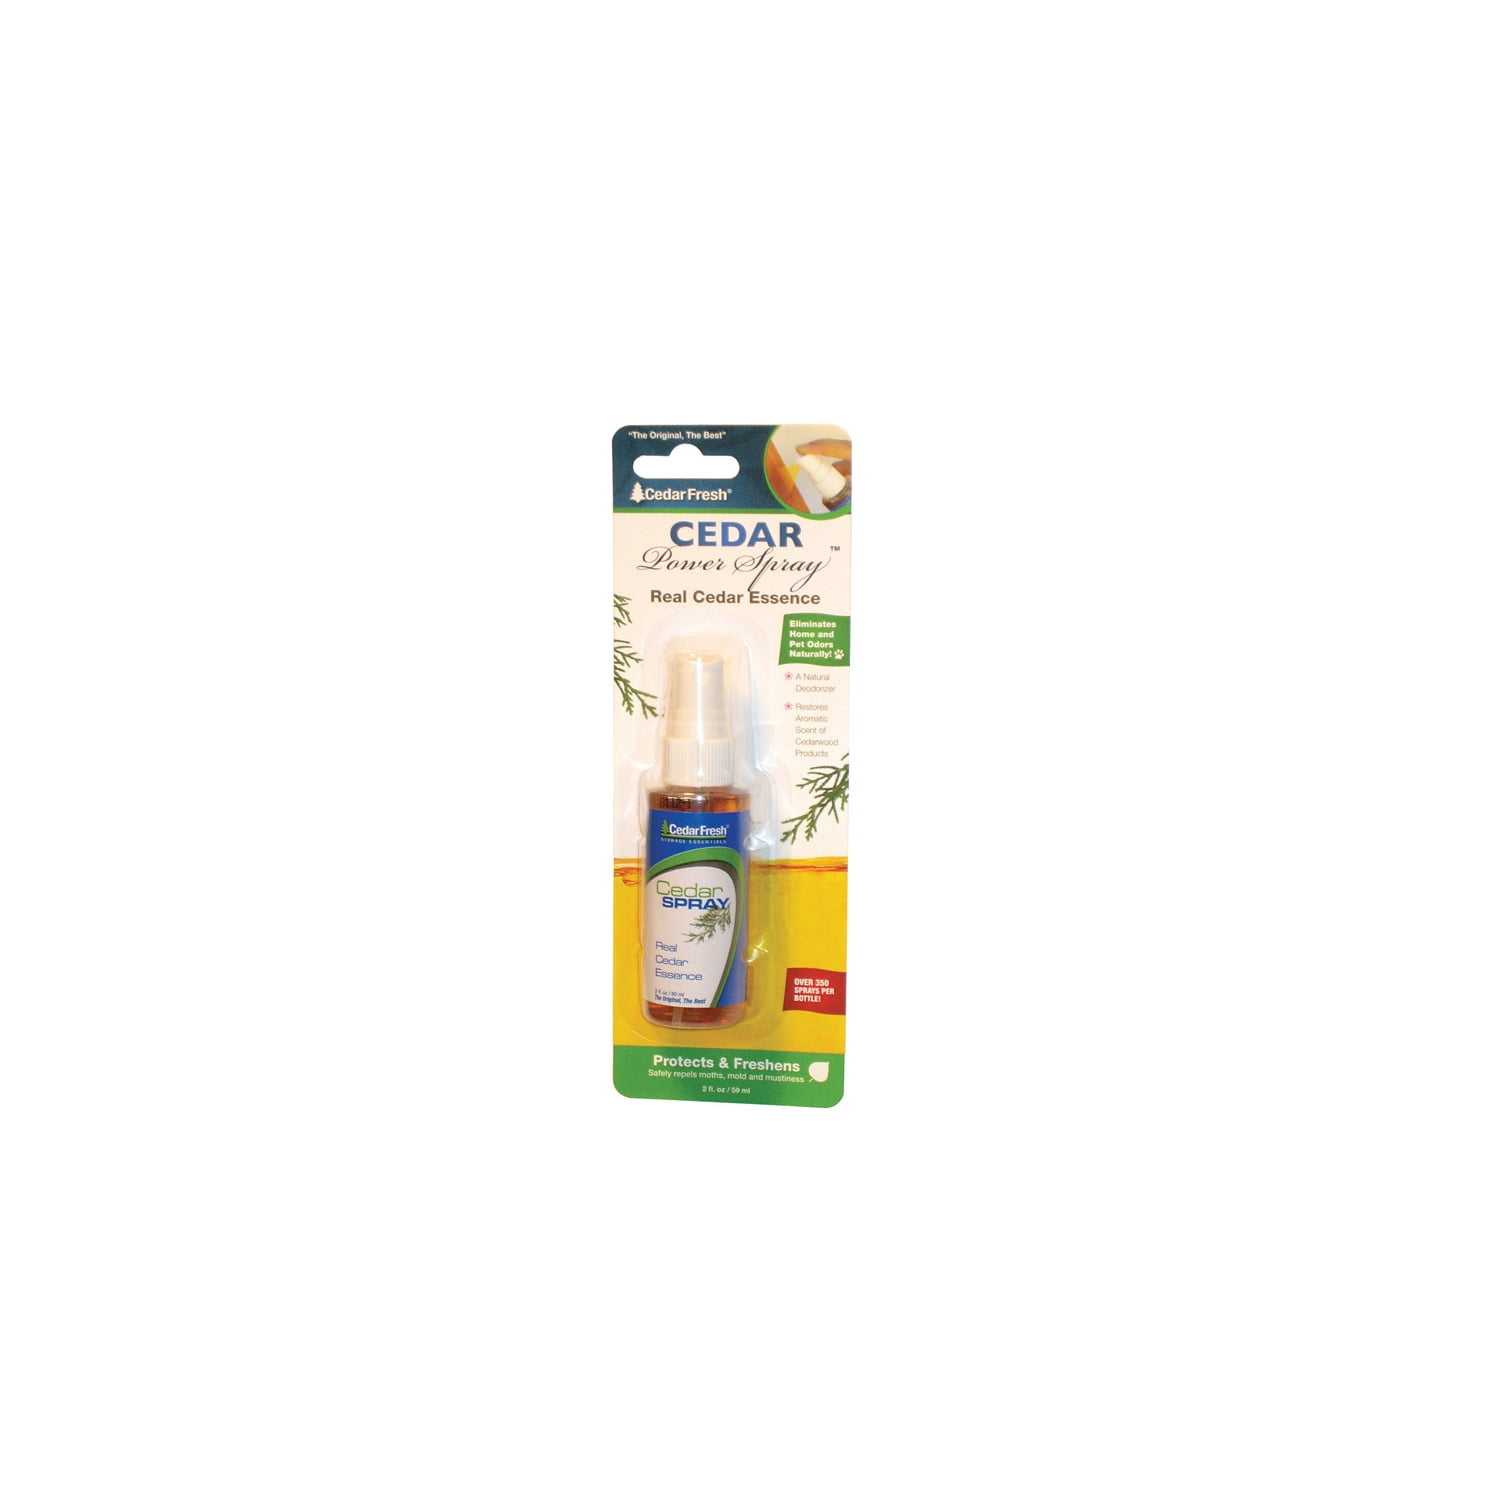 Household Essentials 81702 Cedar Fresh Spray Air Freshener, 2 oz